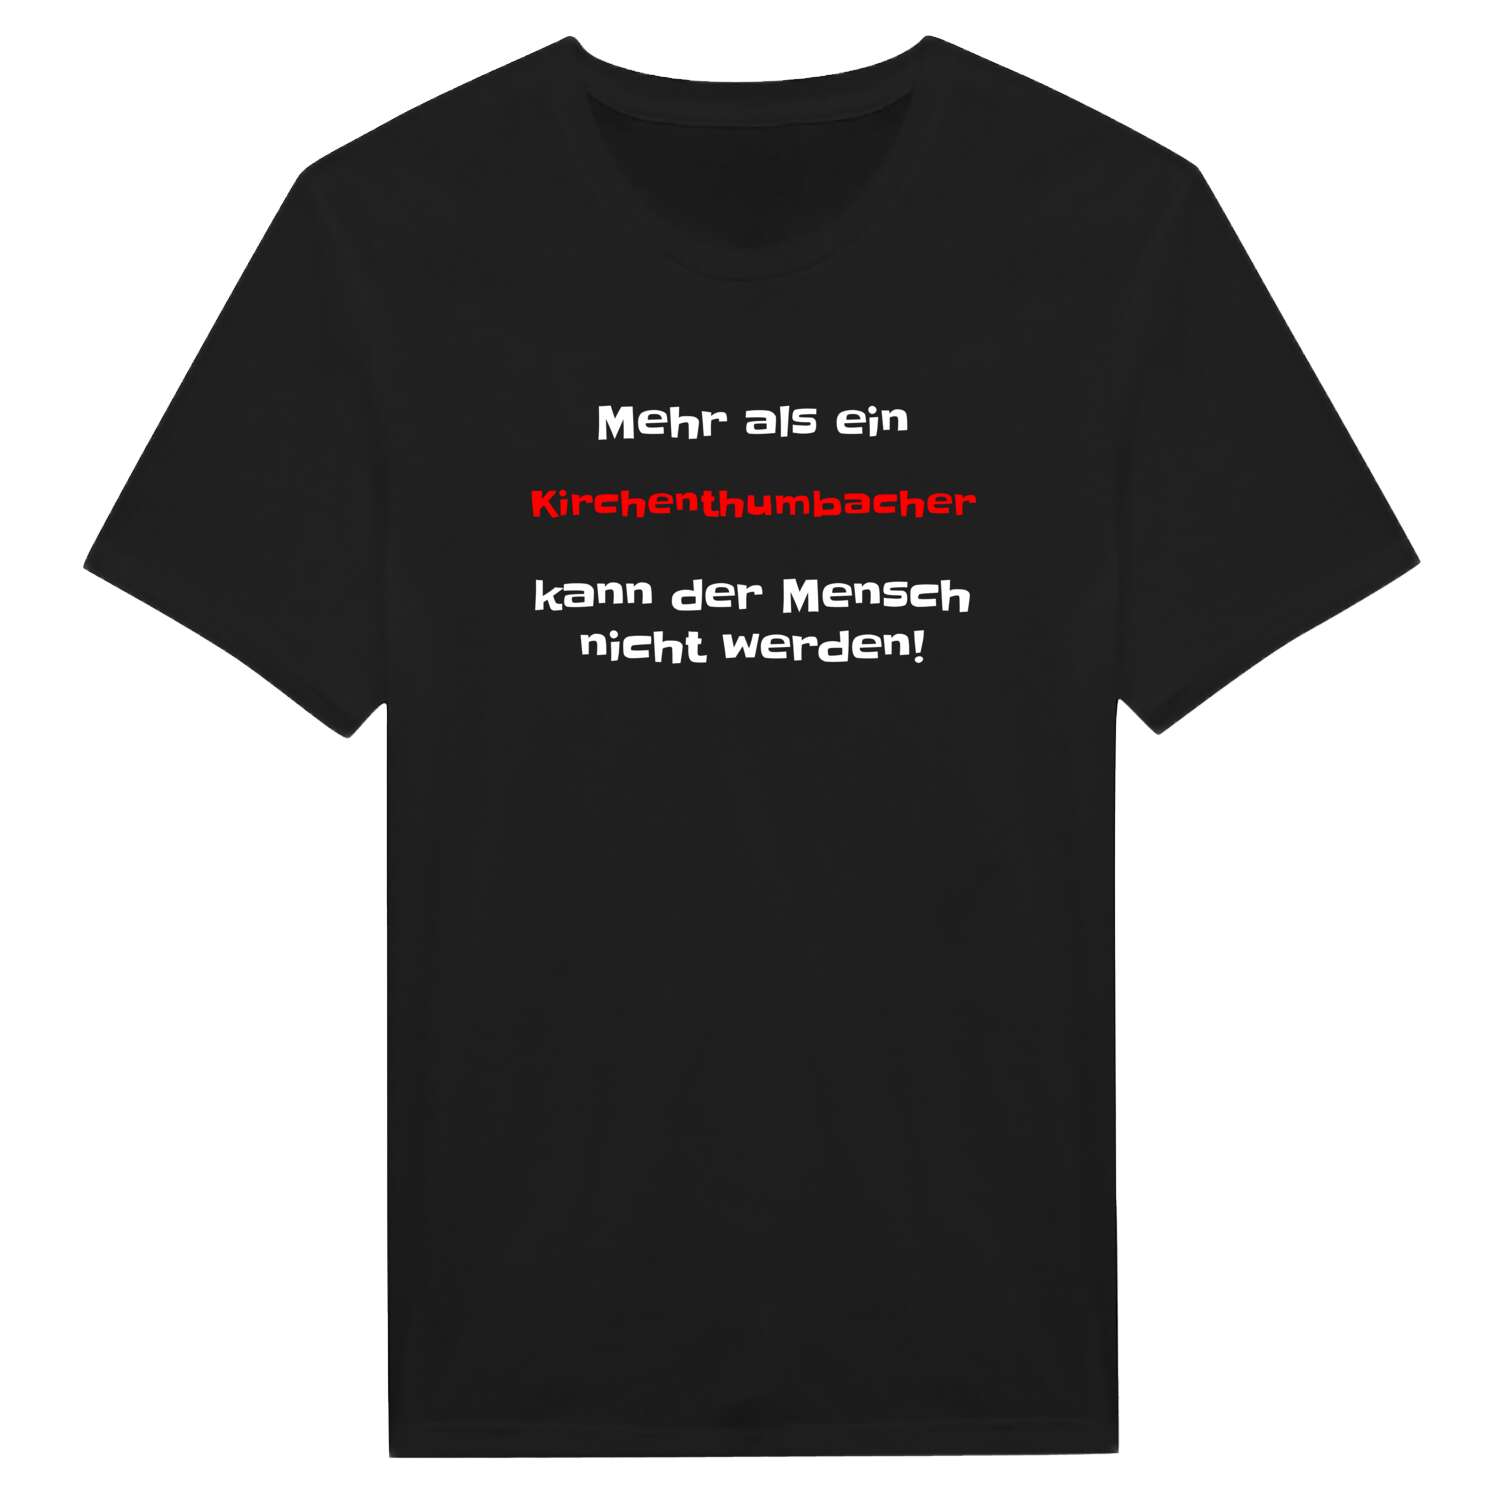 Kirchenthumbach T-Shirt »Mehr als ein«